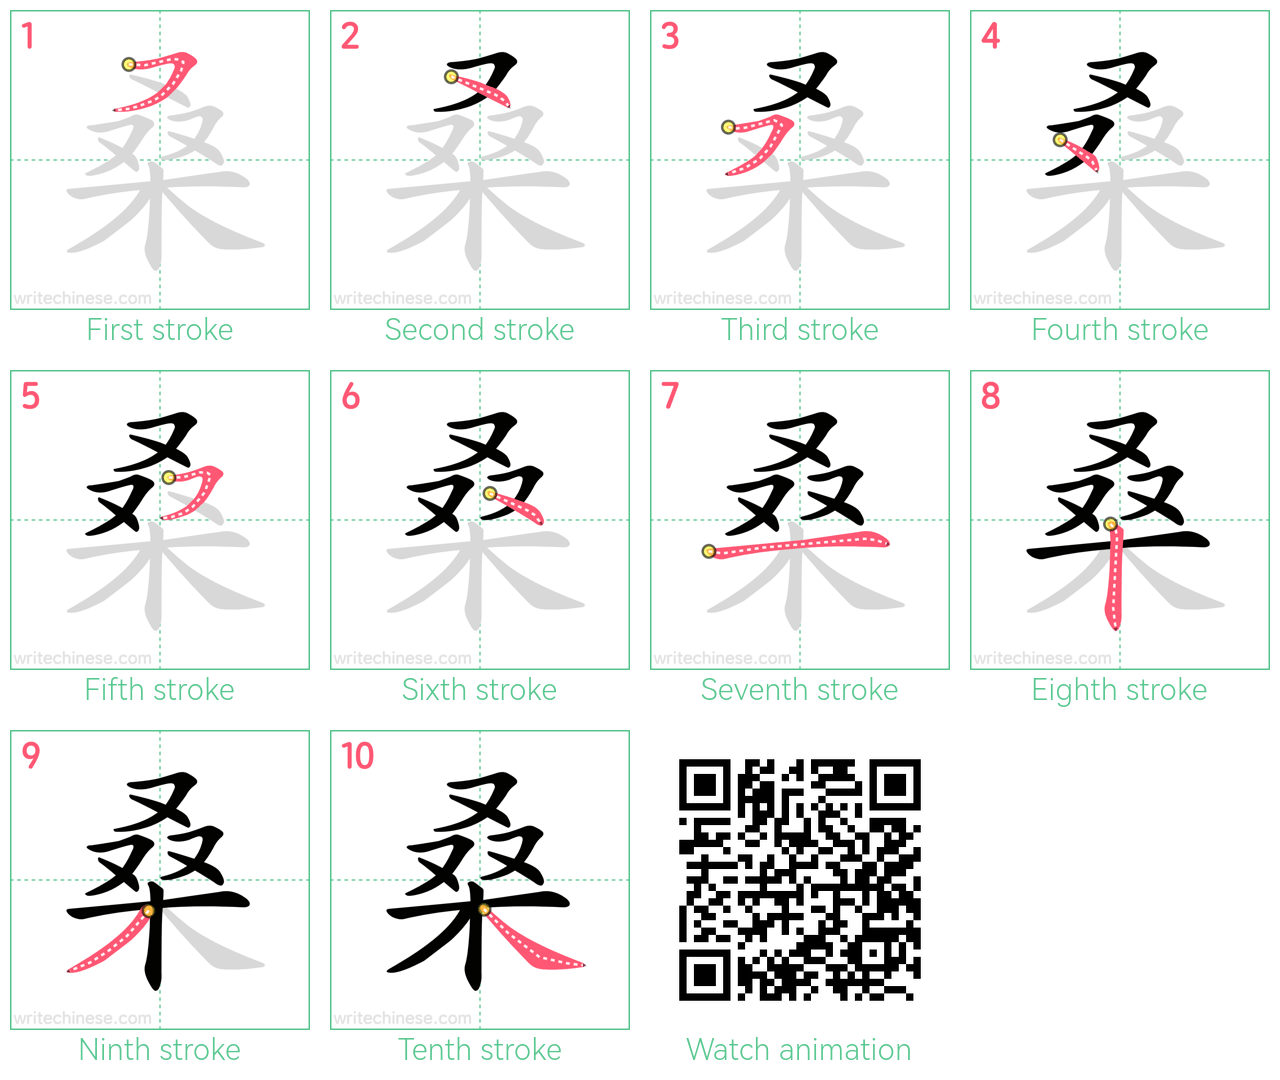 桑 step-by-step stroke order diagrams